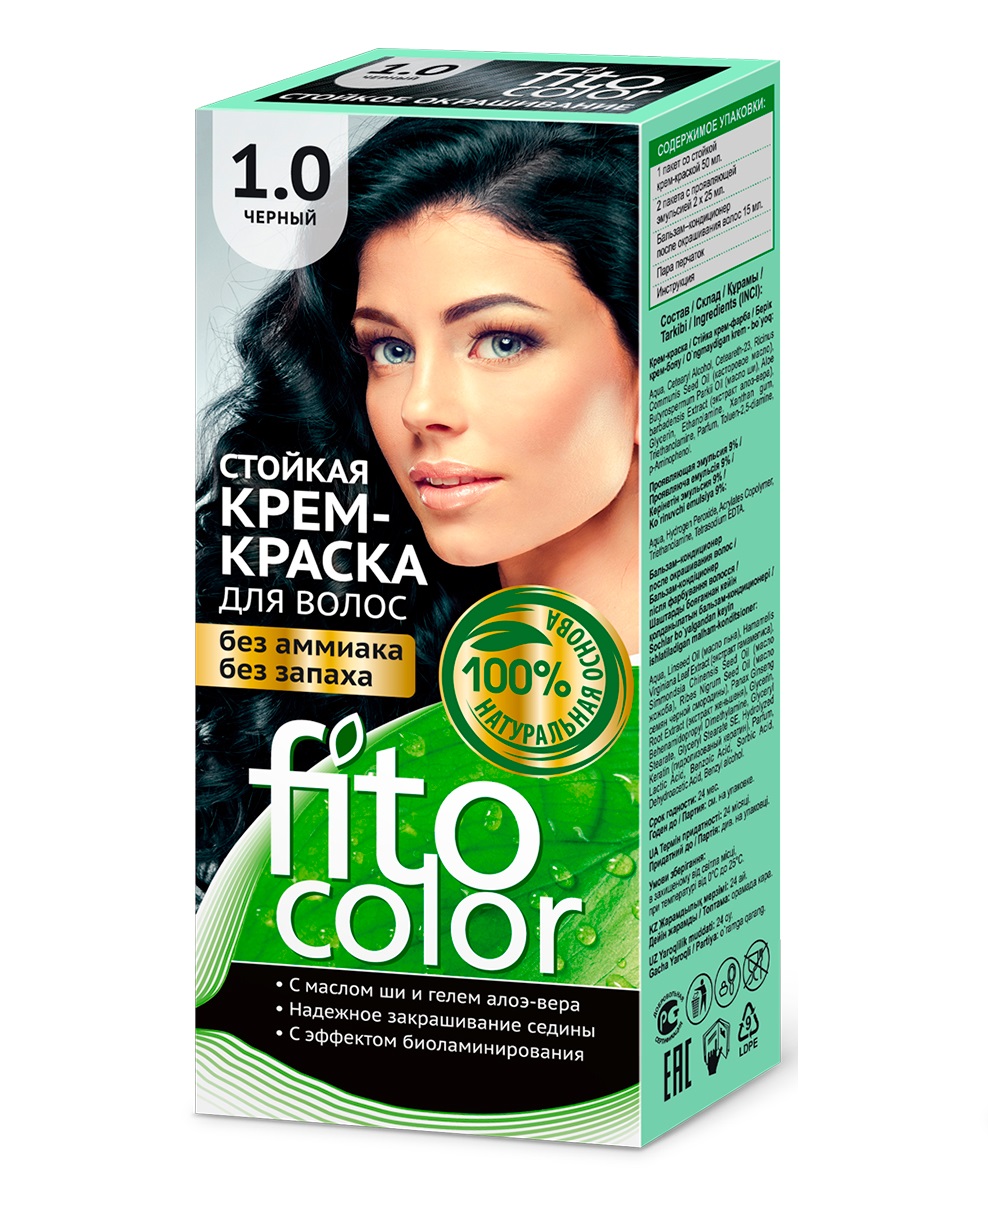 Стойкая крем-краска для волос FitoColor тон Черный 115мл 3 шт стойкая крем краска для волос fito косметик fitocolor тон иссиня 115мл 6 шт